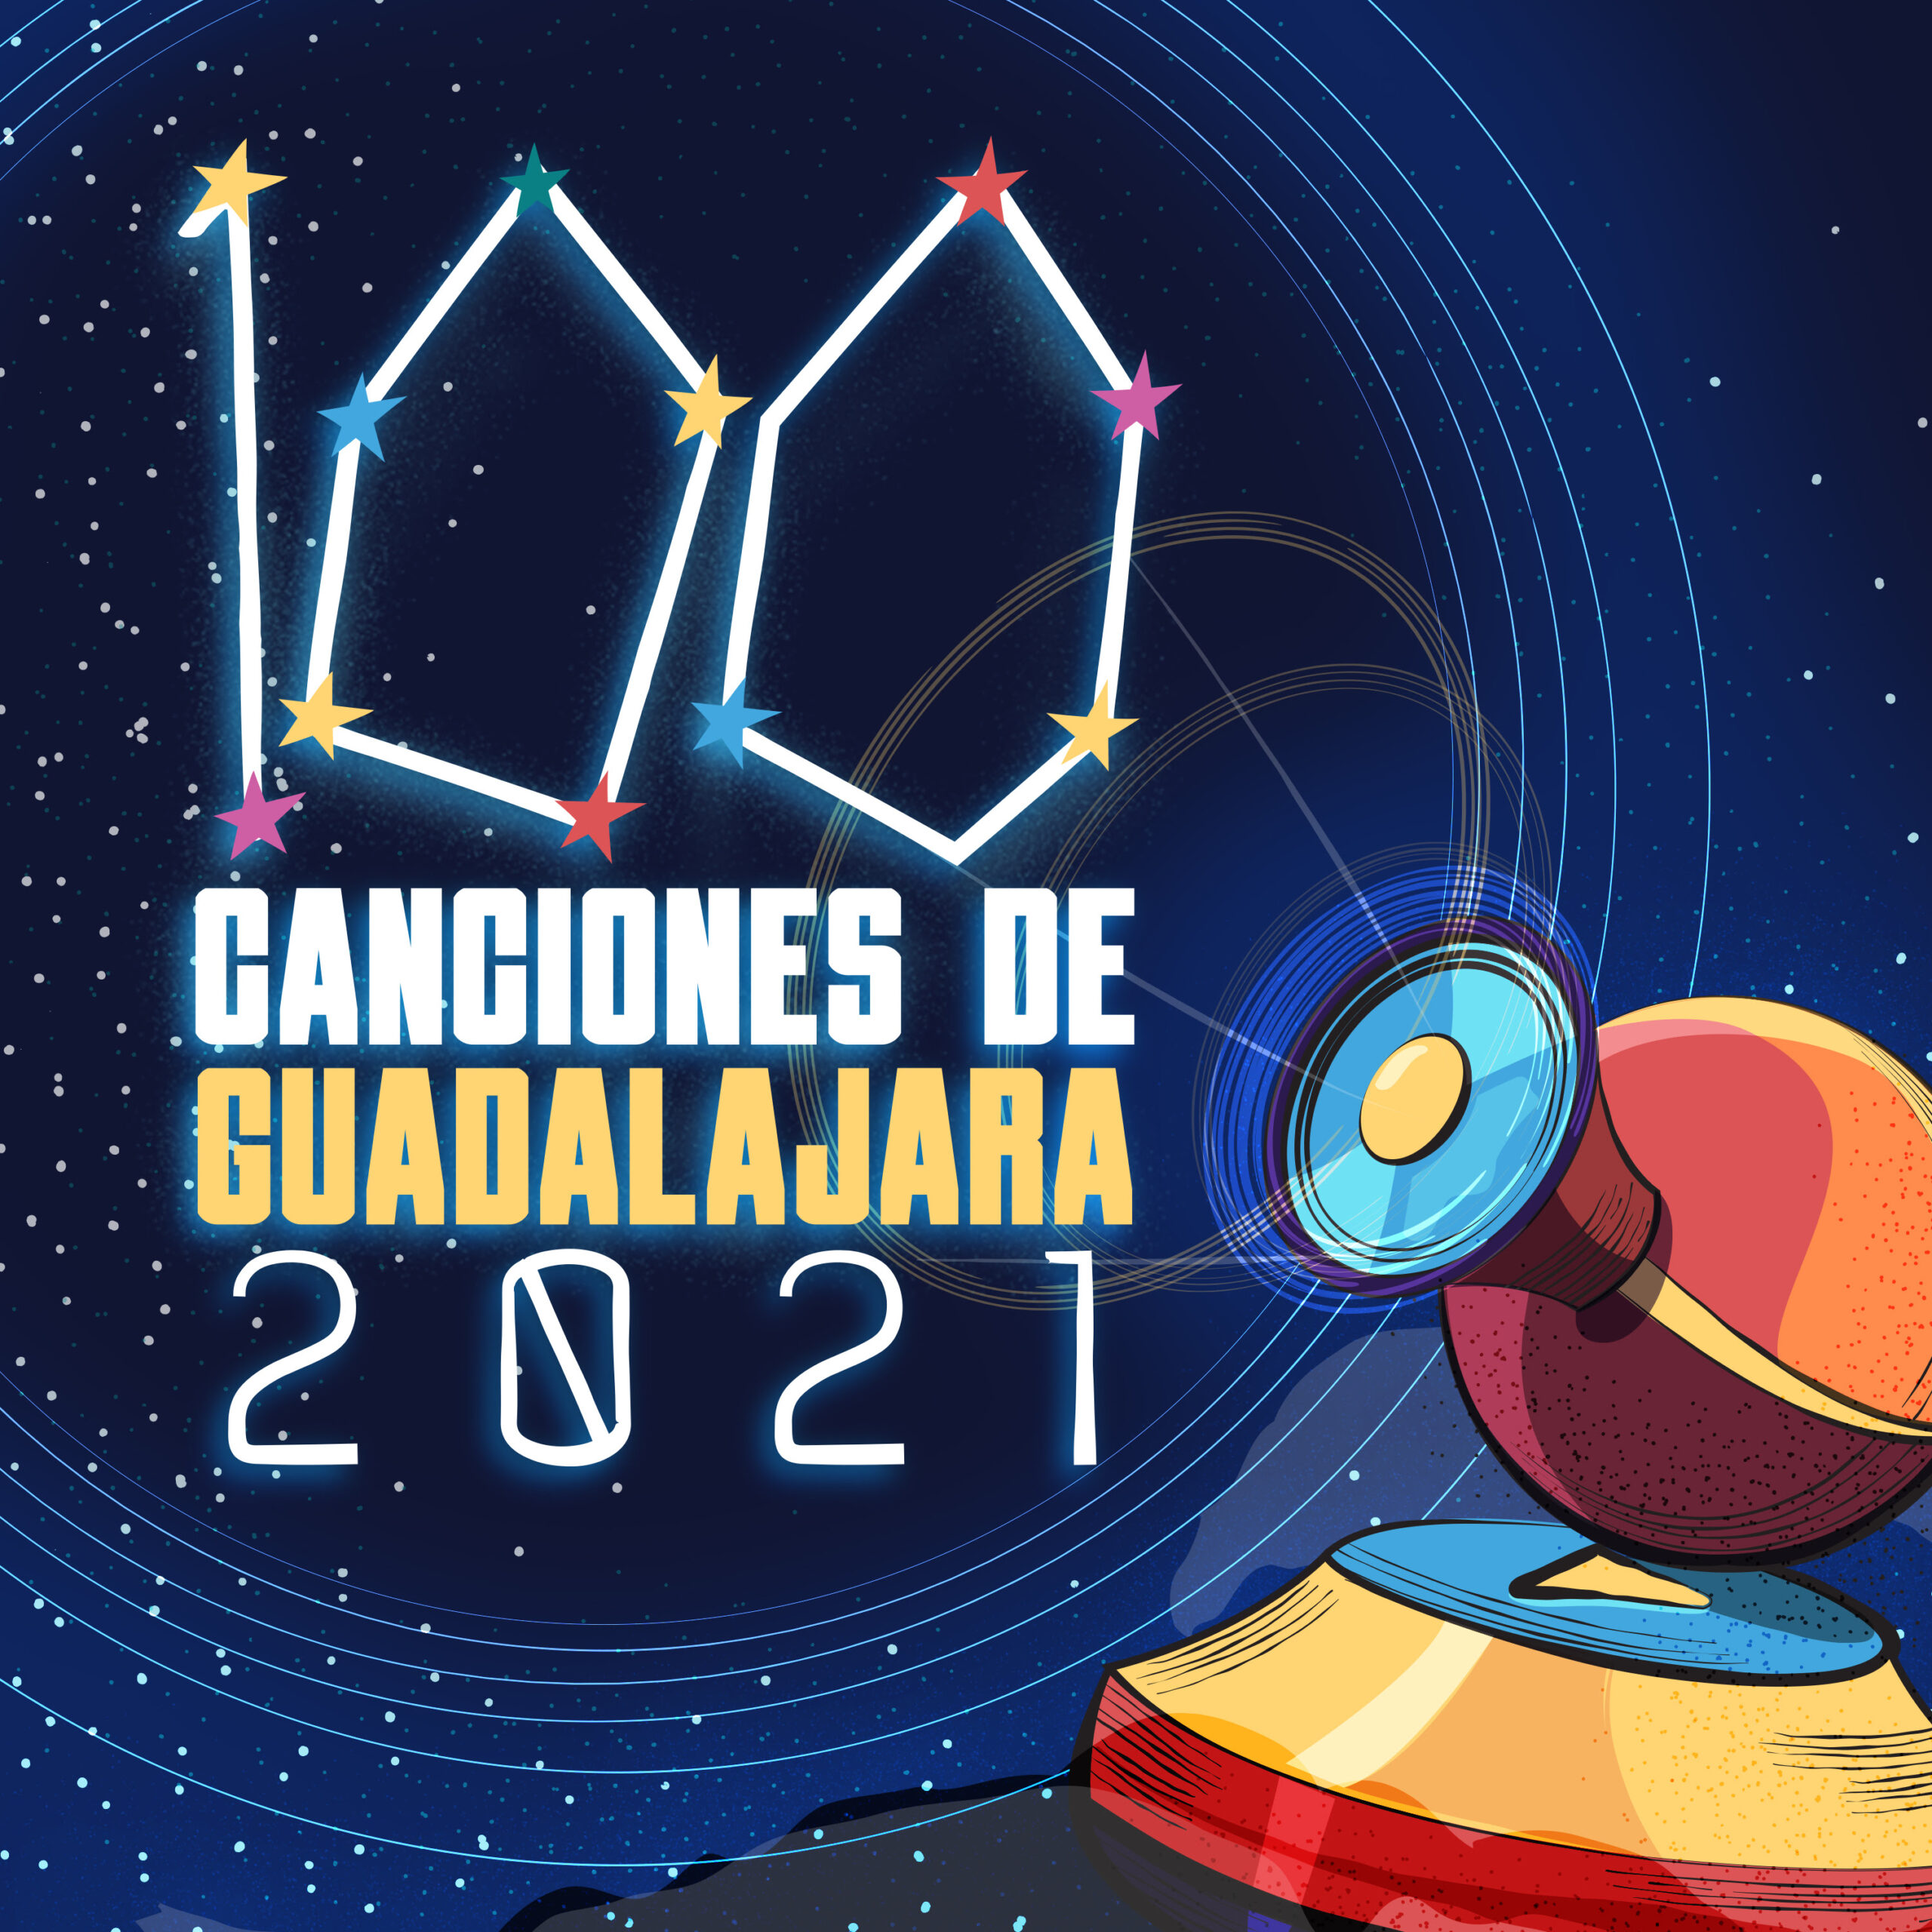  100 Canciones de Guadalajara 2021